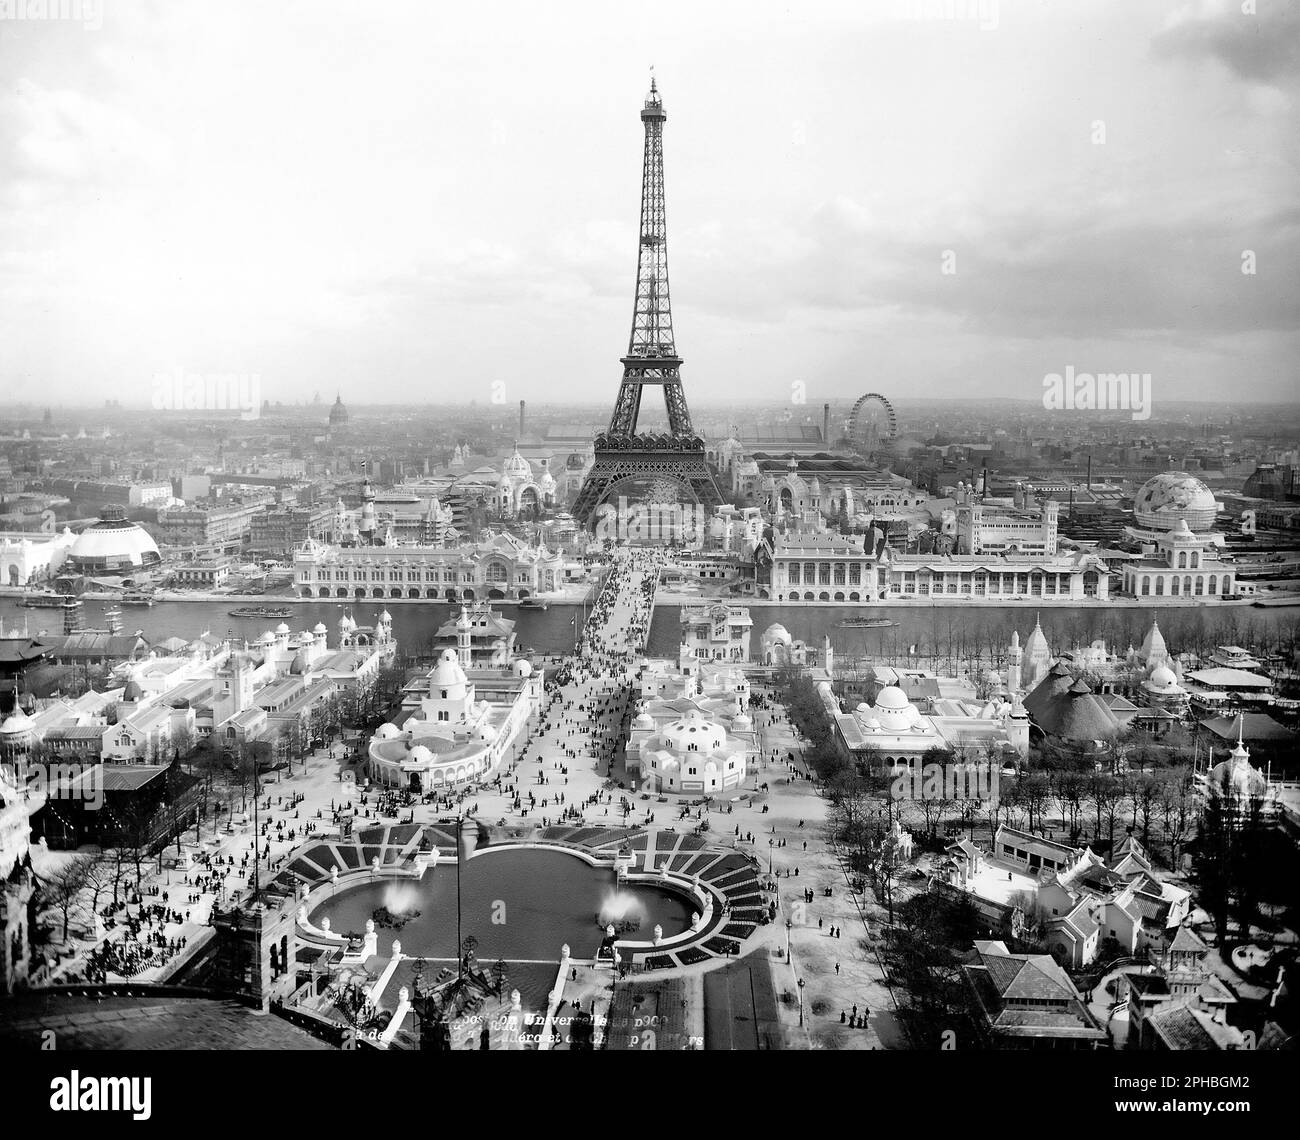 Tour Eiffel, Trocadéro et champs de Mars, exposition universelle 1900, Paris, France. La Tour Eiffel a été construite pour servir d'entrée à l'exposition universelle en 1889. Banque D'Images